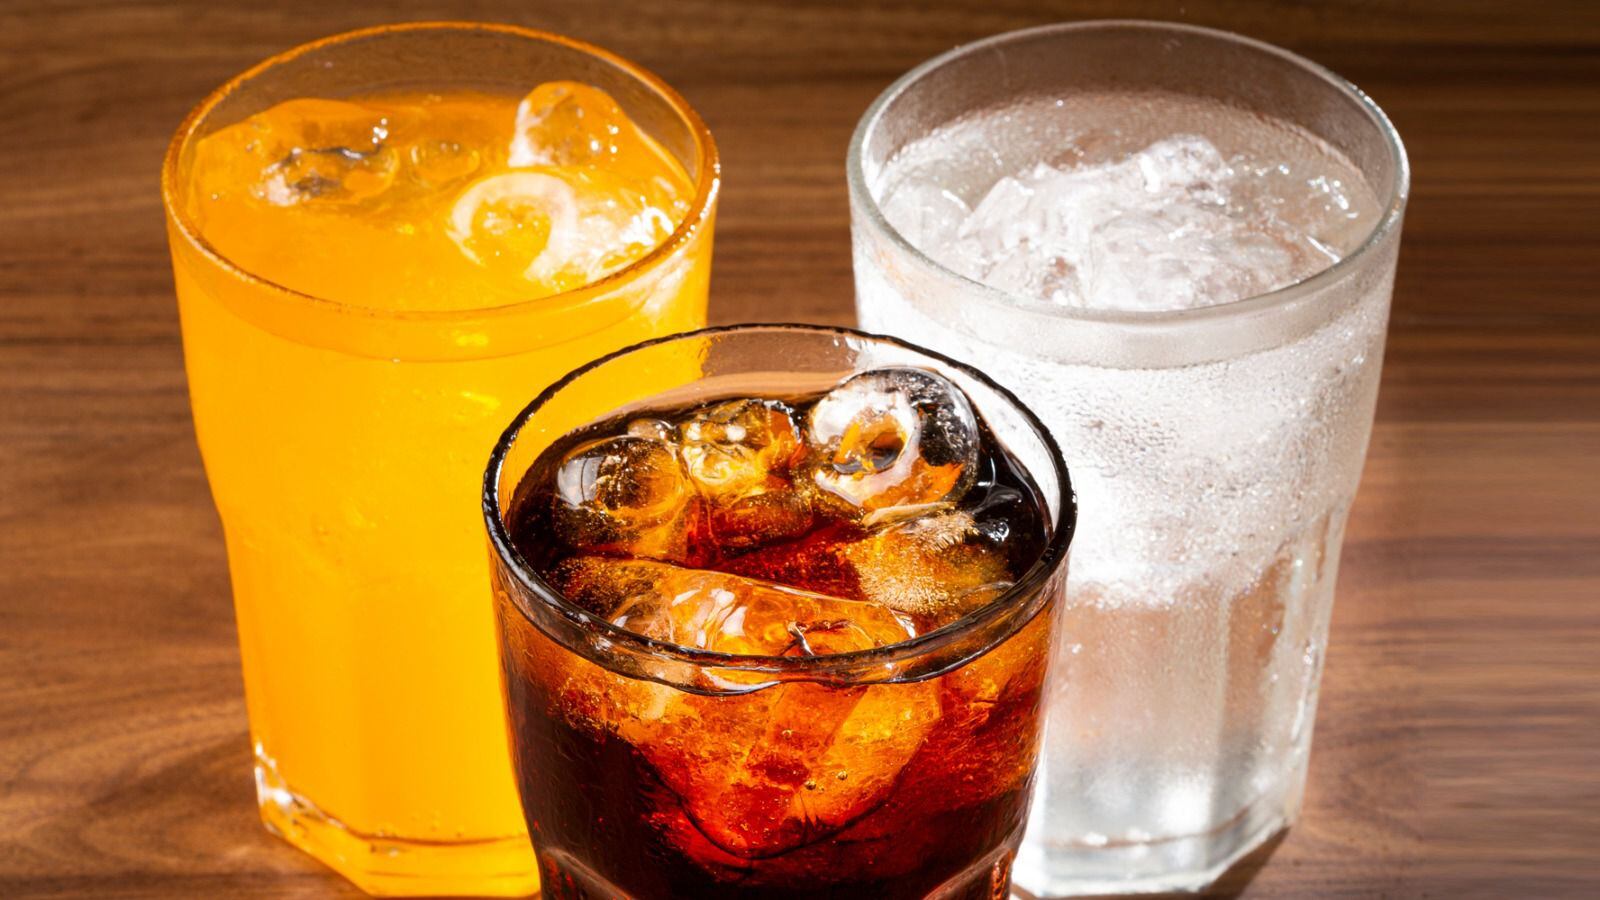 Aunque todos los refrescos hacen daño, hay dos en particular que son dañinos para la salud: de cola y de naranja. (Foto: Shutterstock).